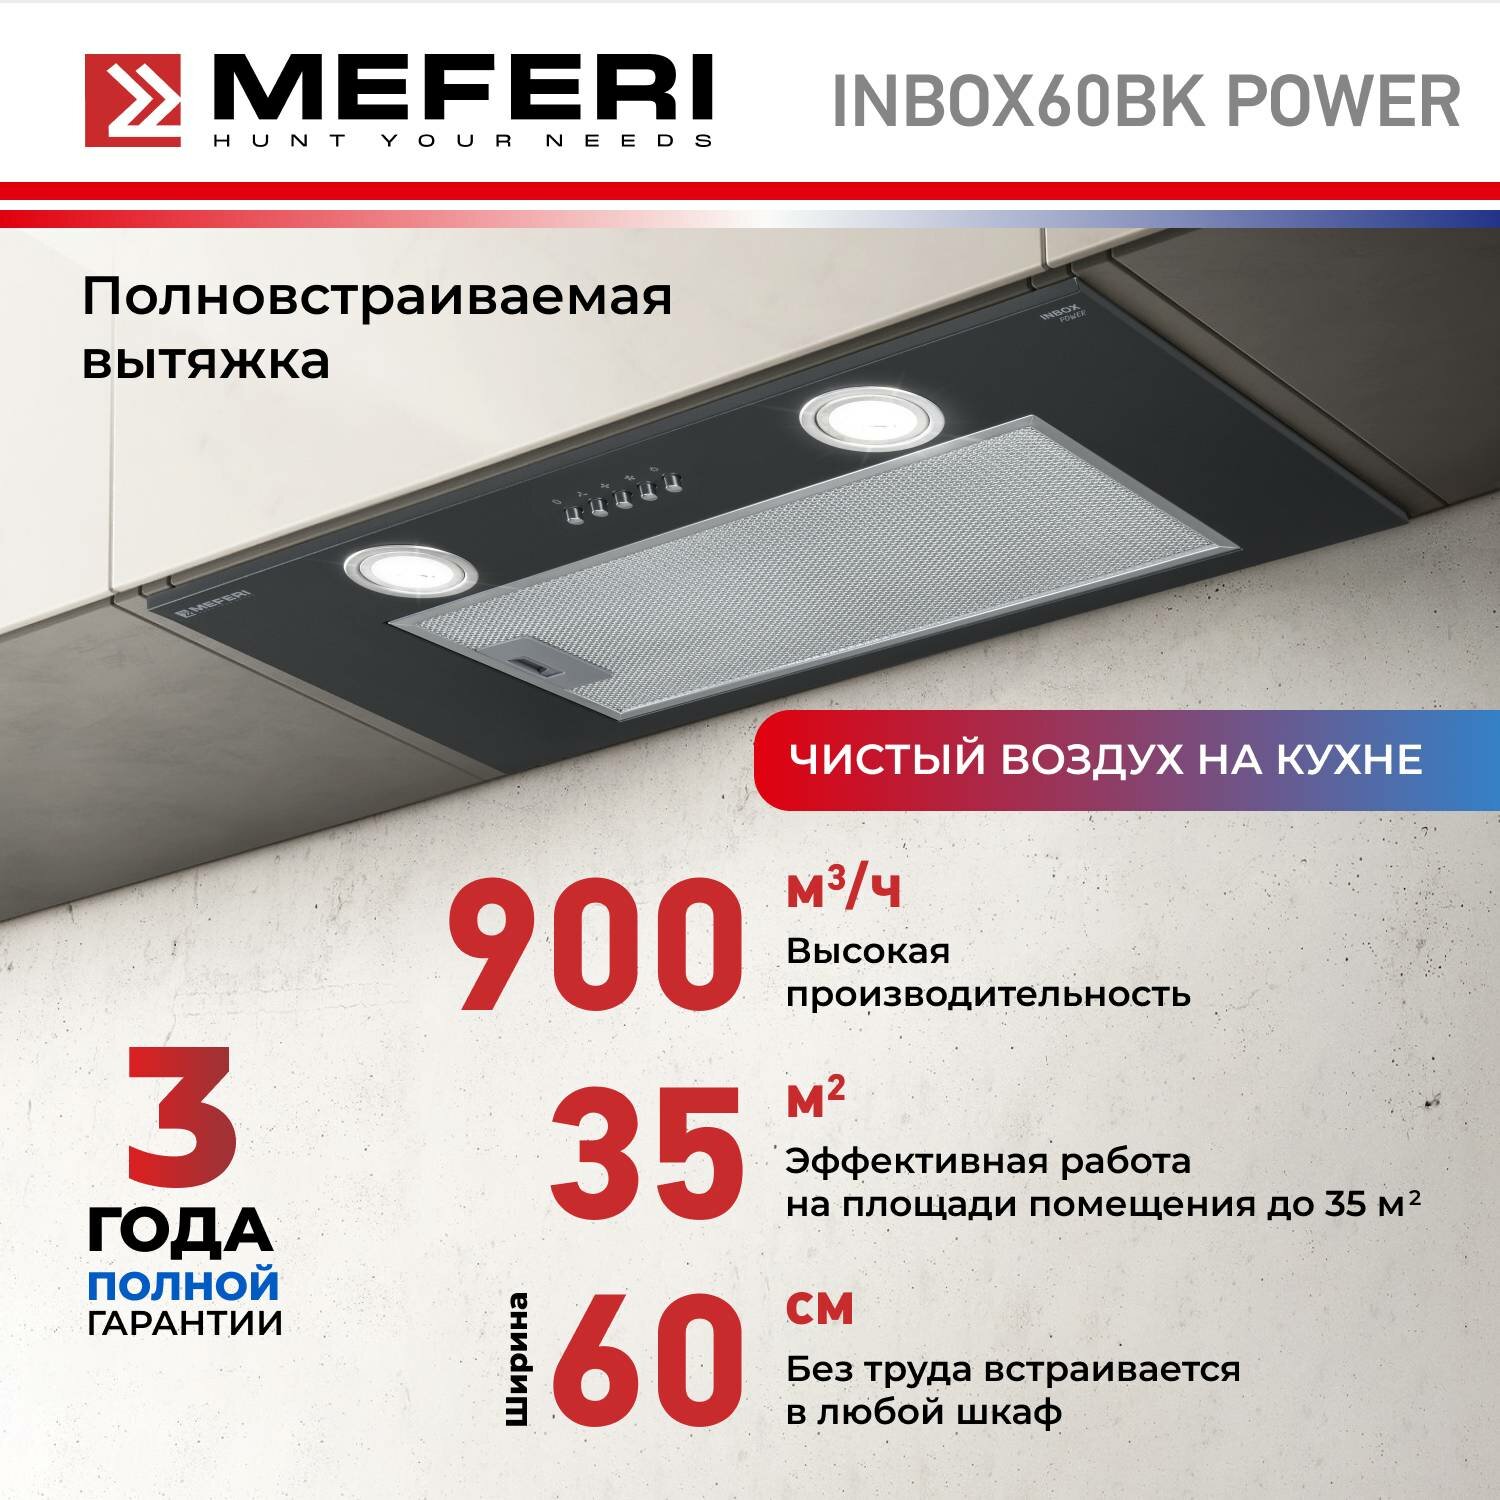 Полновстраиваемая вытяжка MEFERI INBOX60 POWER